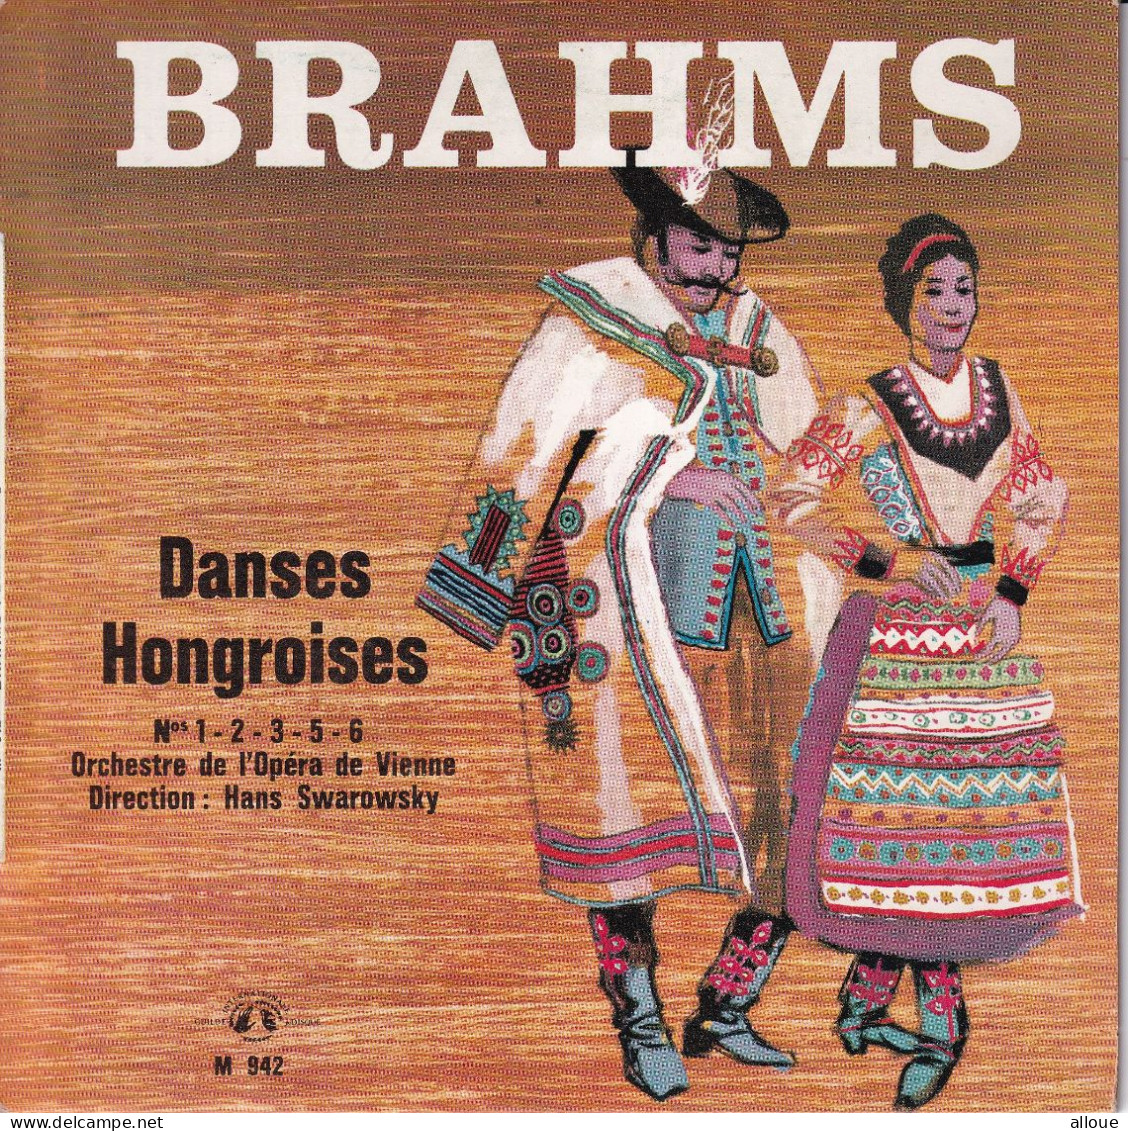 ORCHESTRE DE L'OPERA DE VIENNE - DIRECTION HANS SWAROWSKY - FR EP - BRAHMS - DANCES HONGROISES - Classical